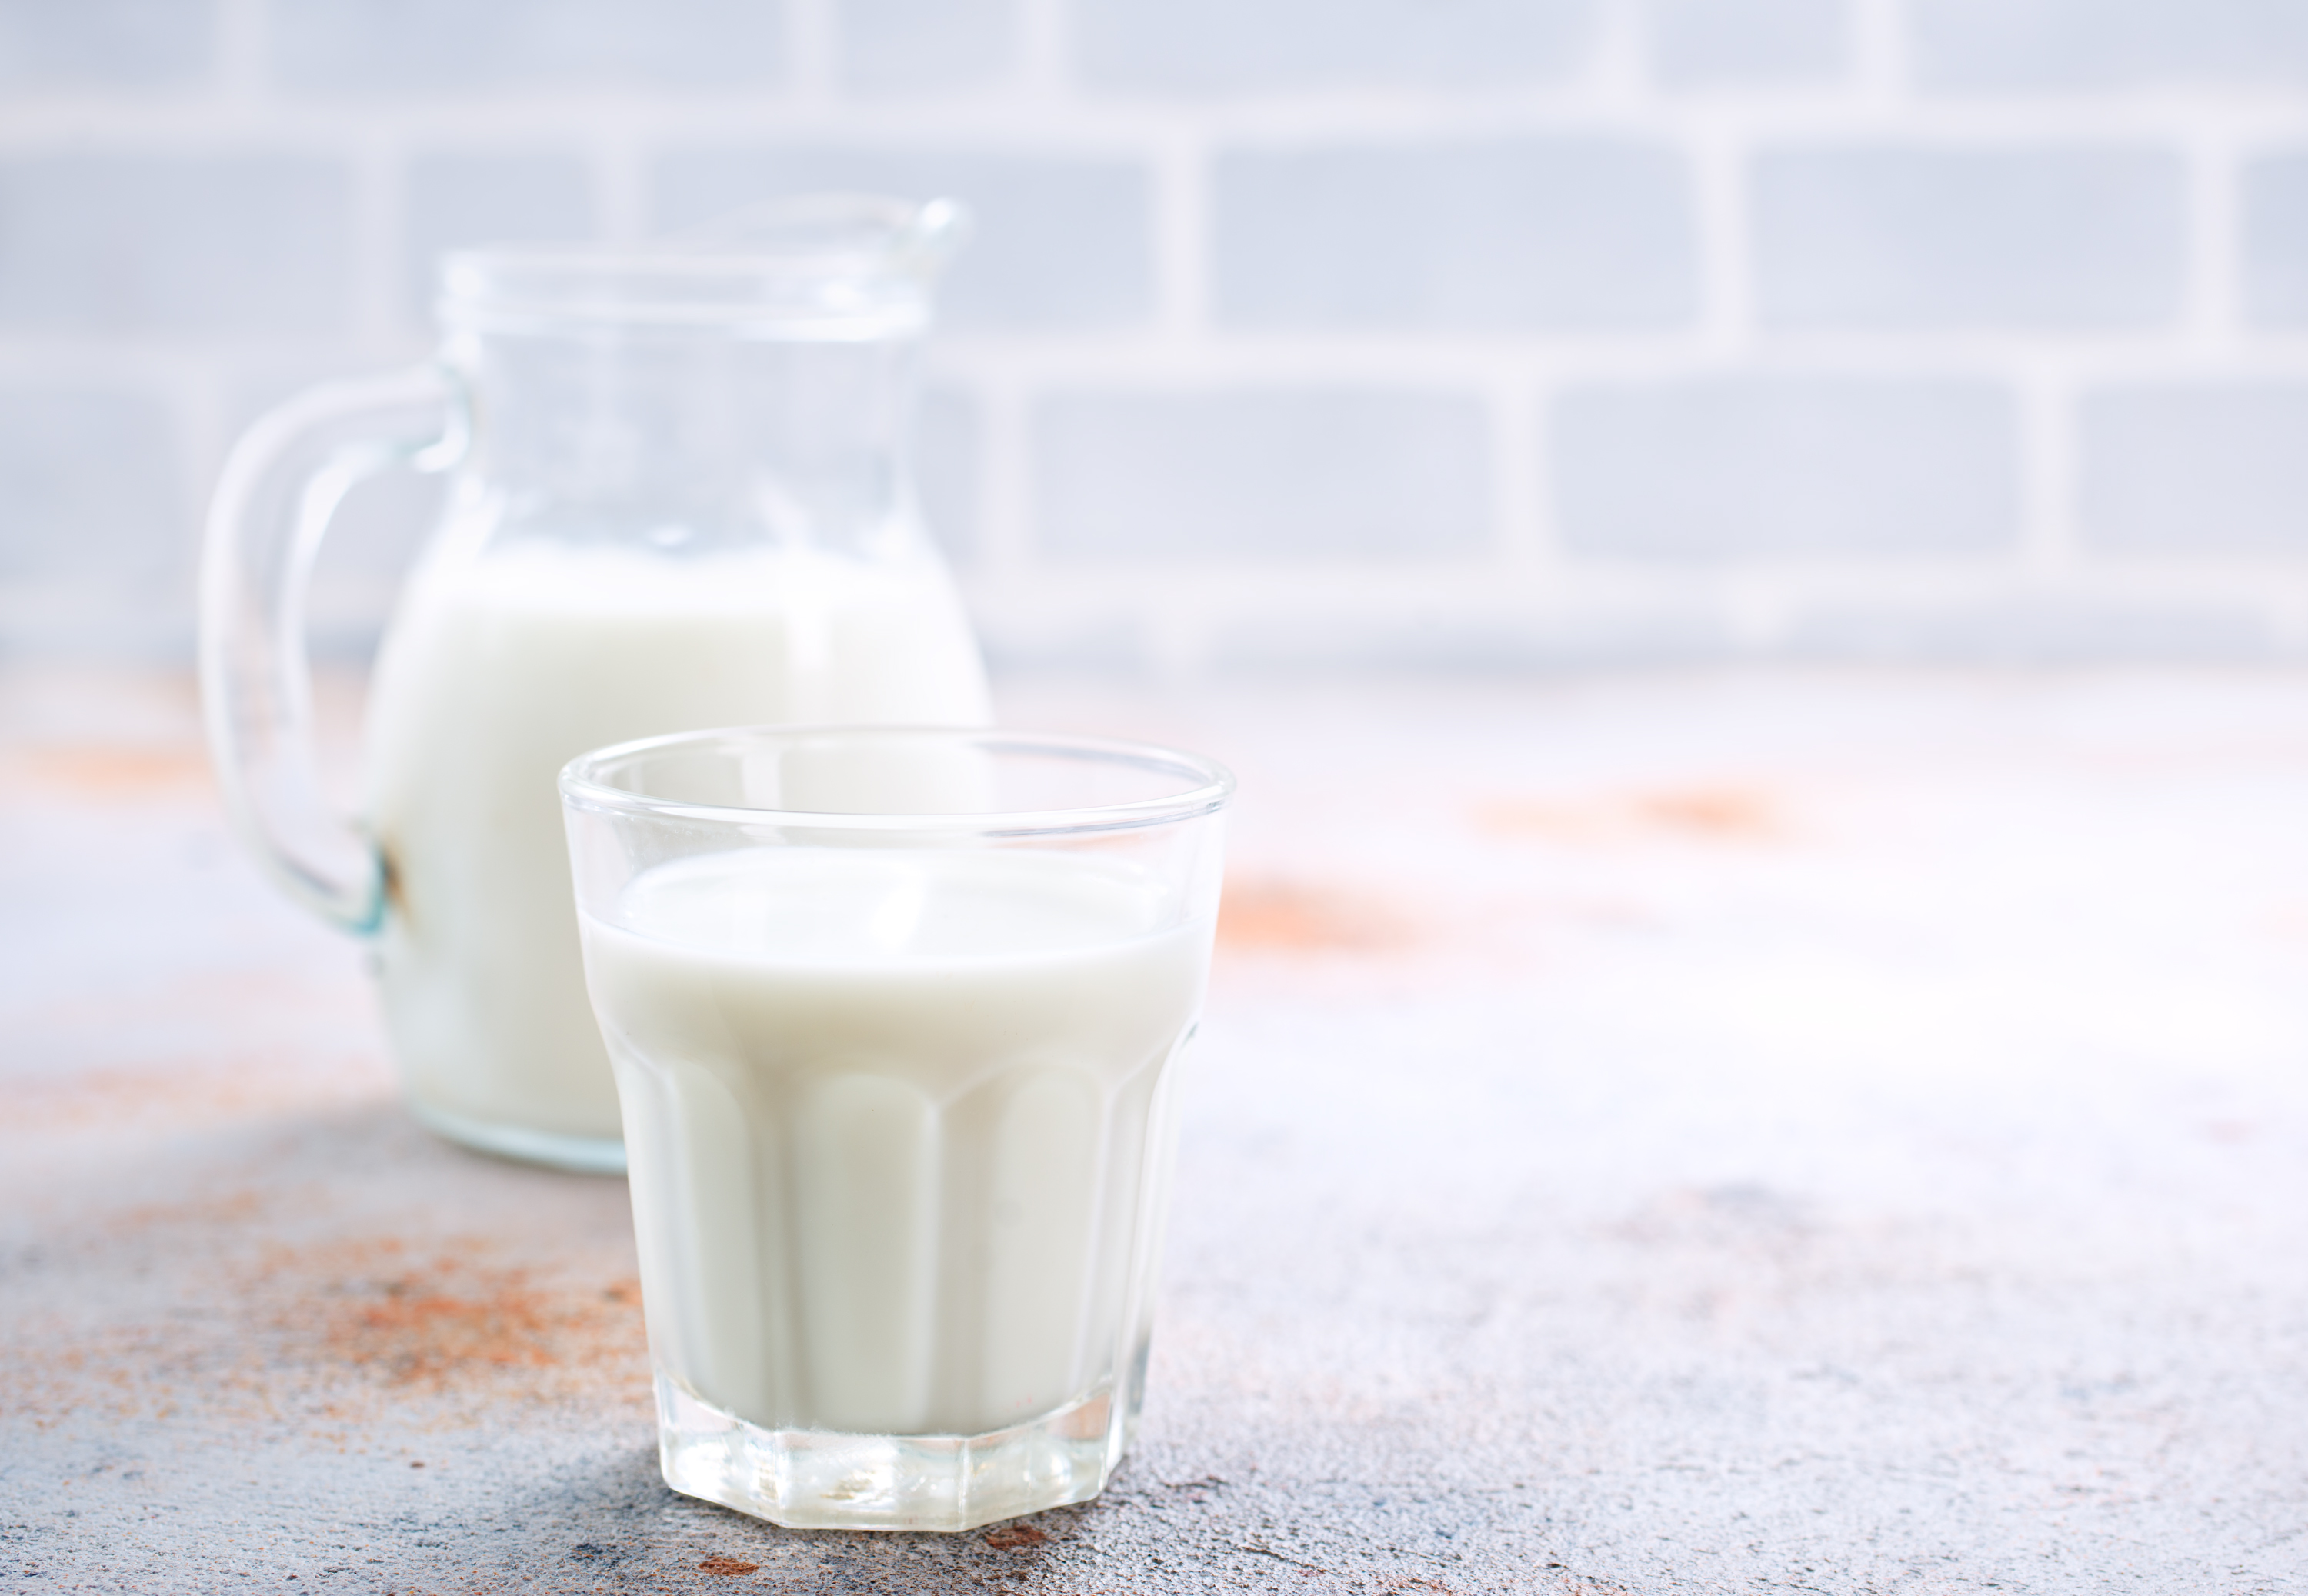 Ceny skupu mleka surowego według GUS w styczniu